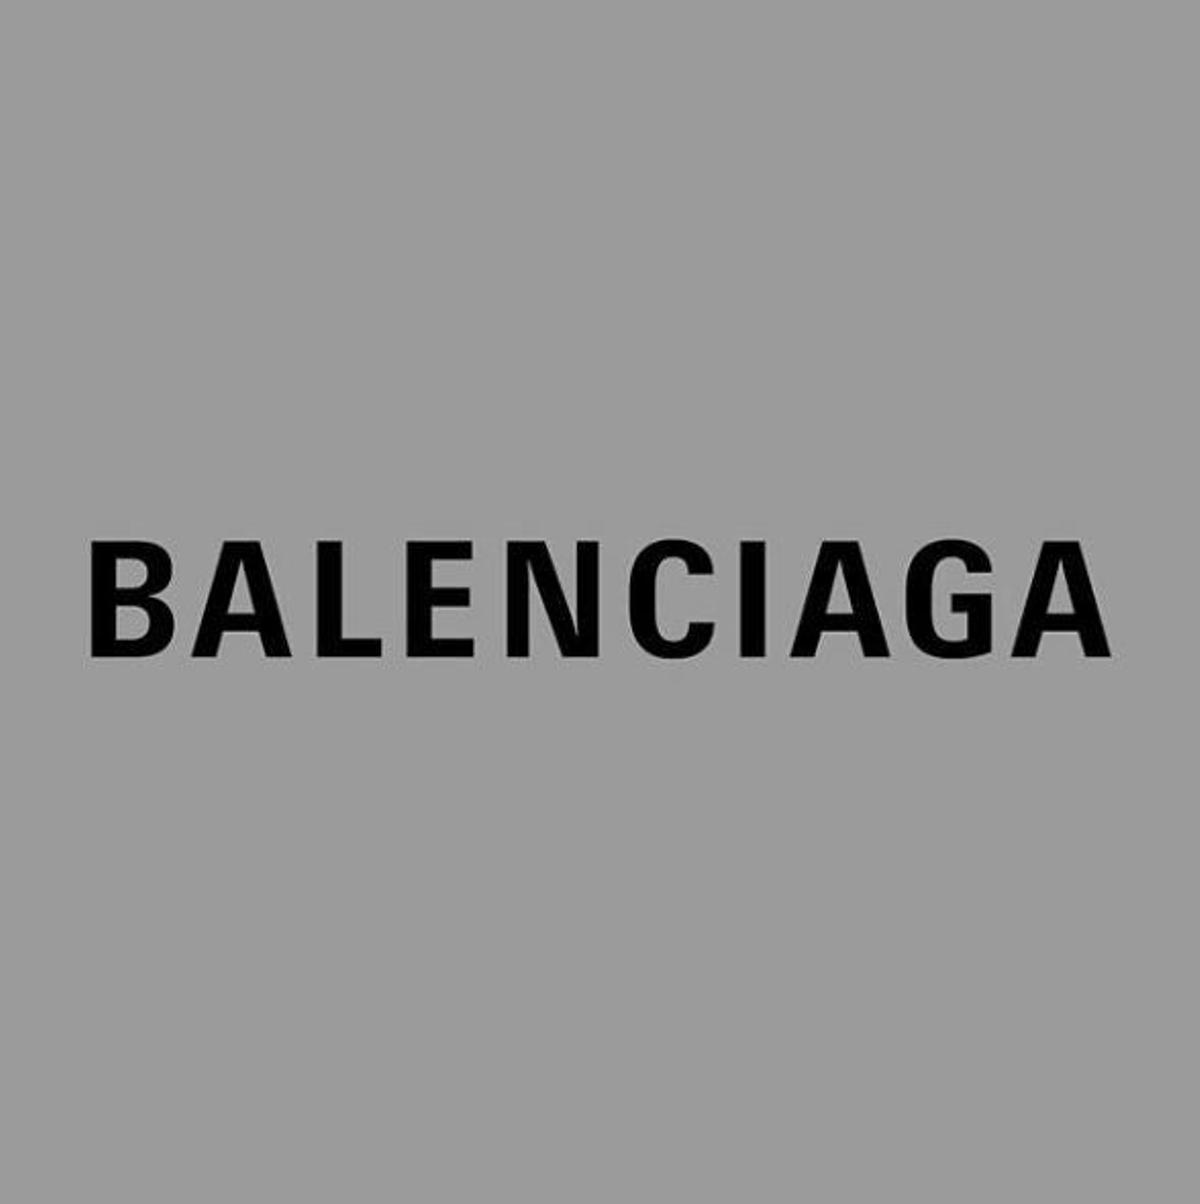 El nuevo logo de Balenciaga